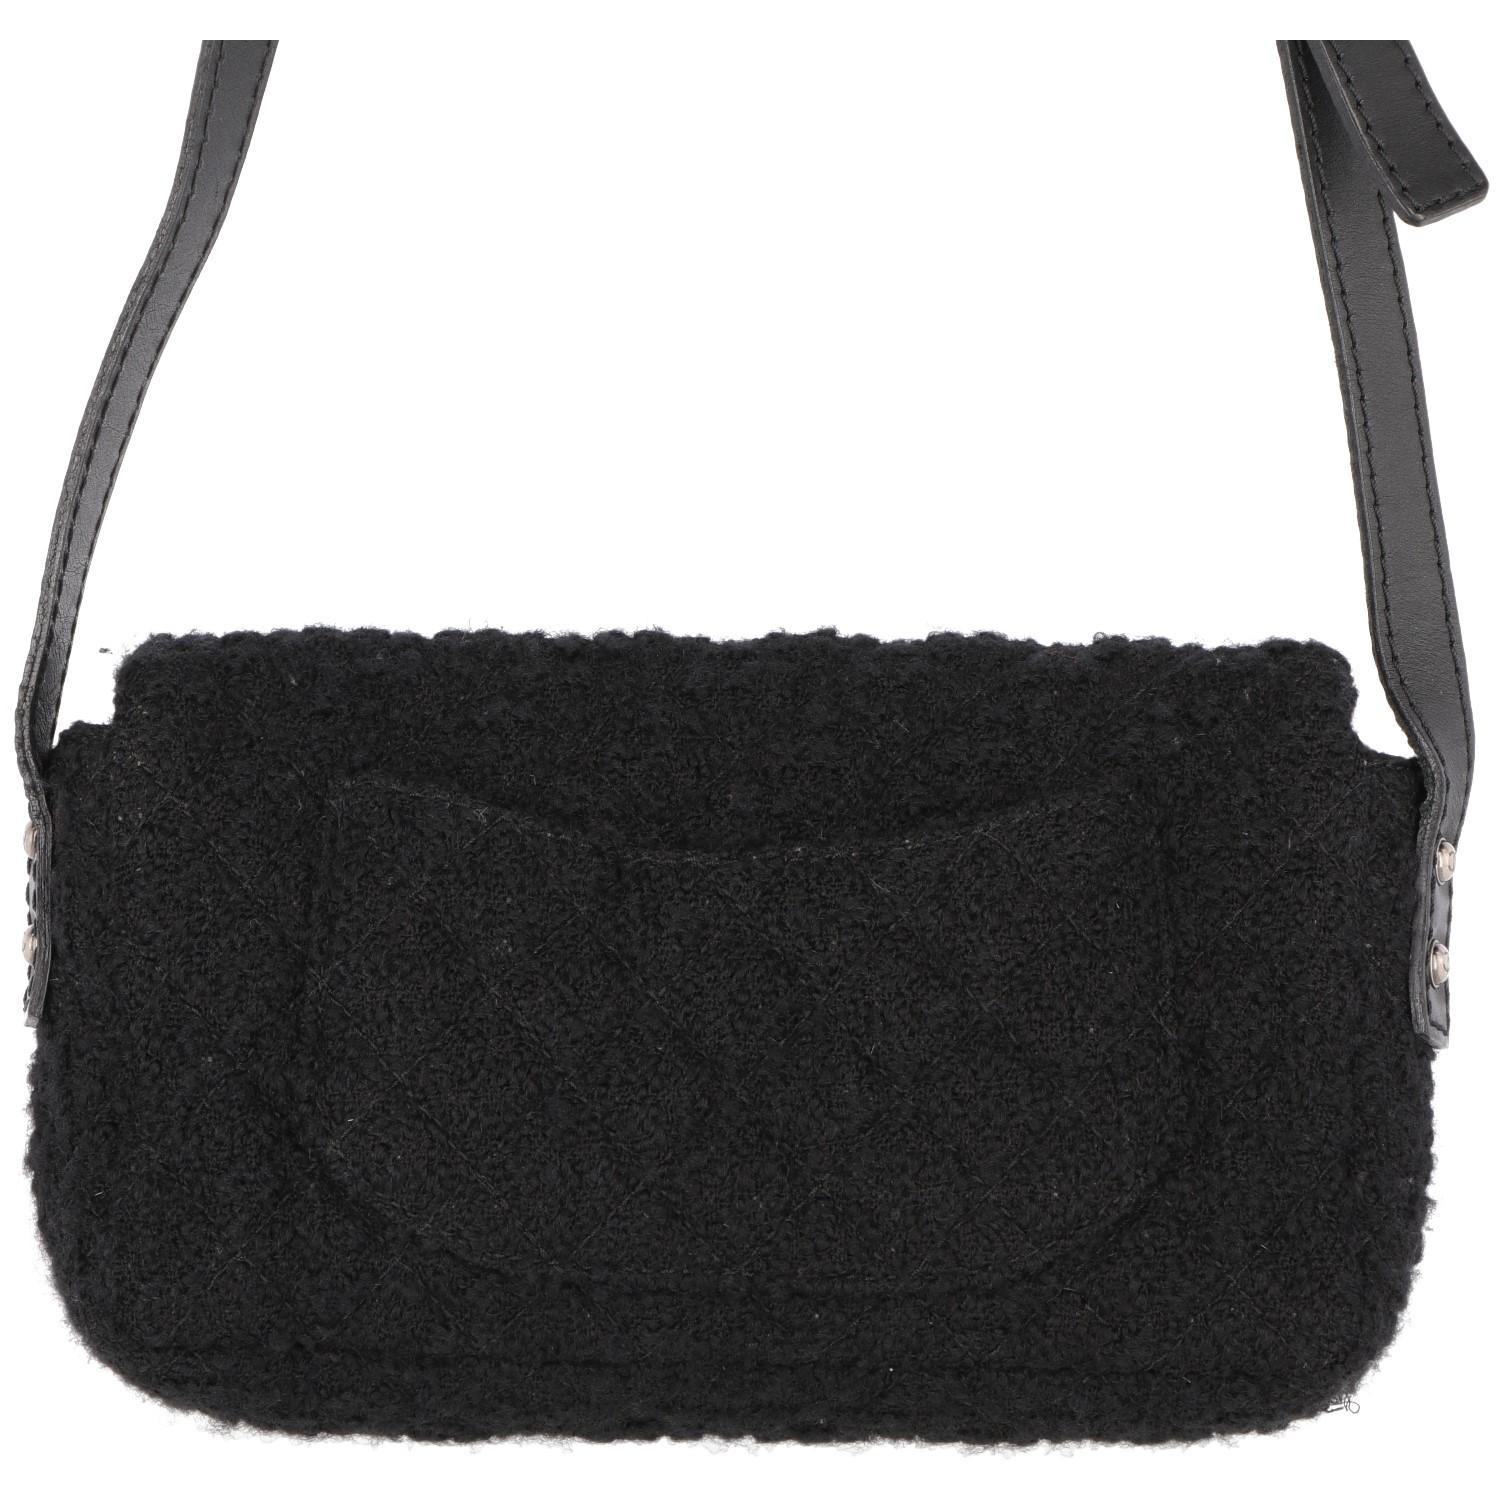 Women's 2008-2009s Chanel Black Tweed Vintage Bag